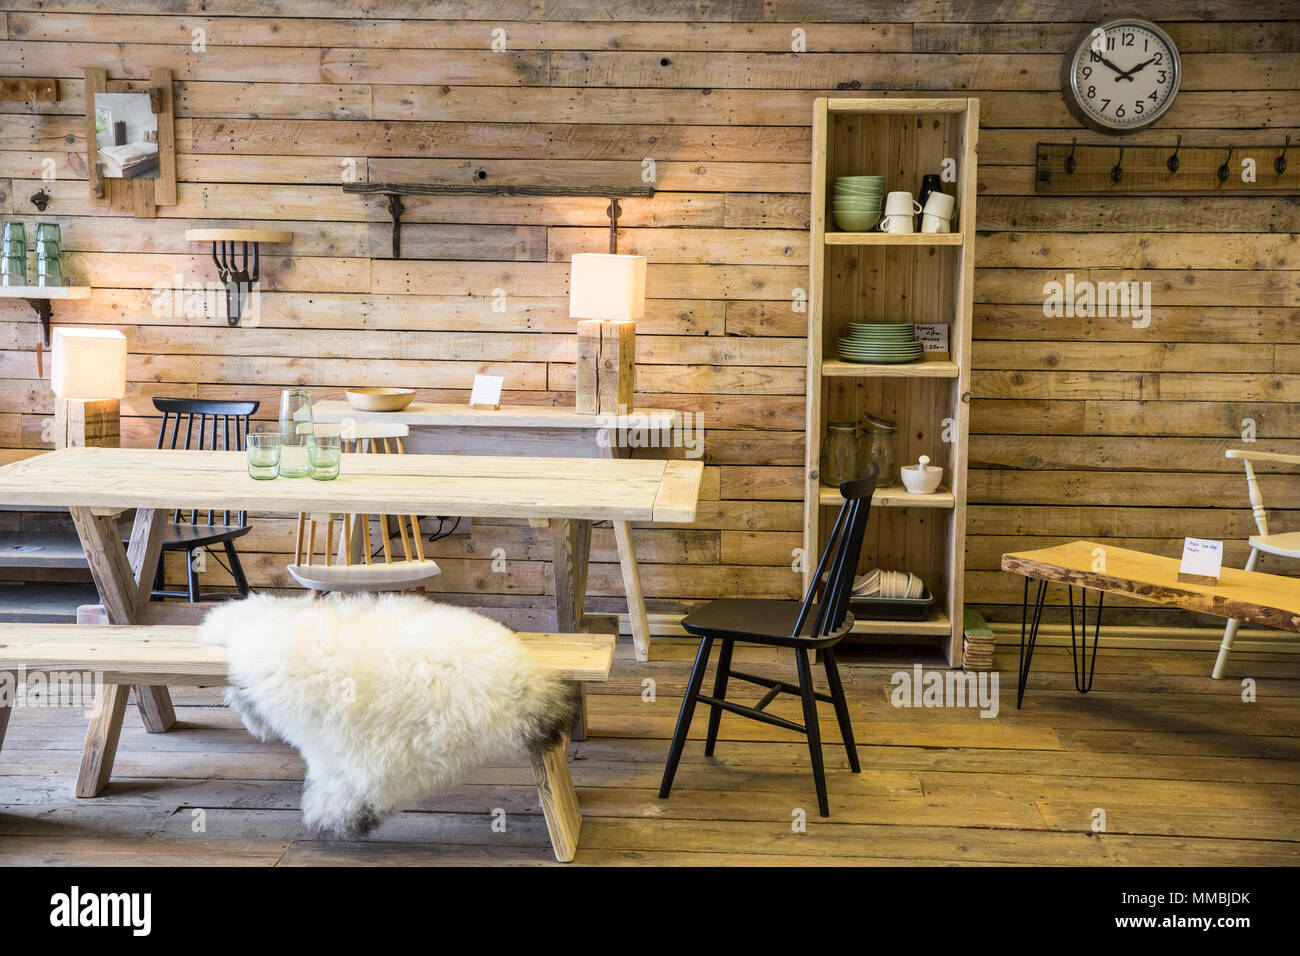 Visualización de los muebles hechos de madera reciclada, incluyendo mesa de  comedor y un banco, estantería y silla, suelo de madera y la pared  Fotografía de stock - Alamy